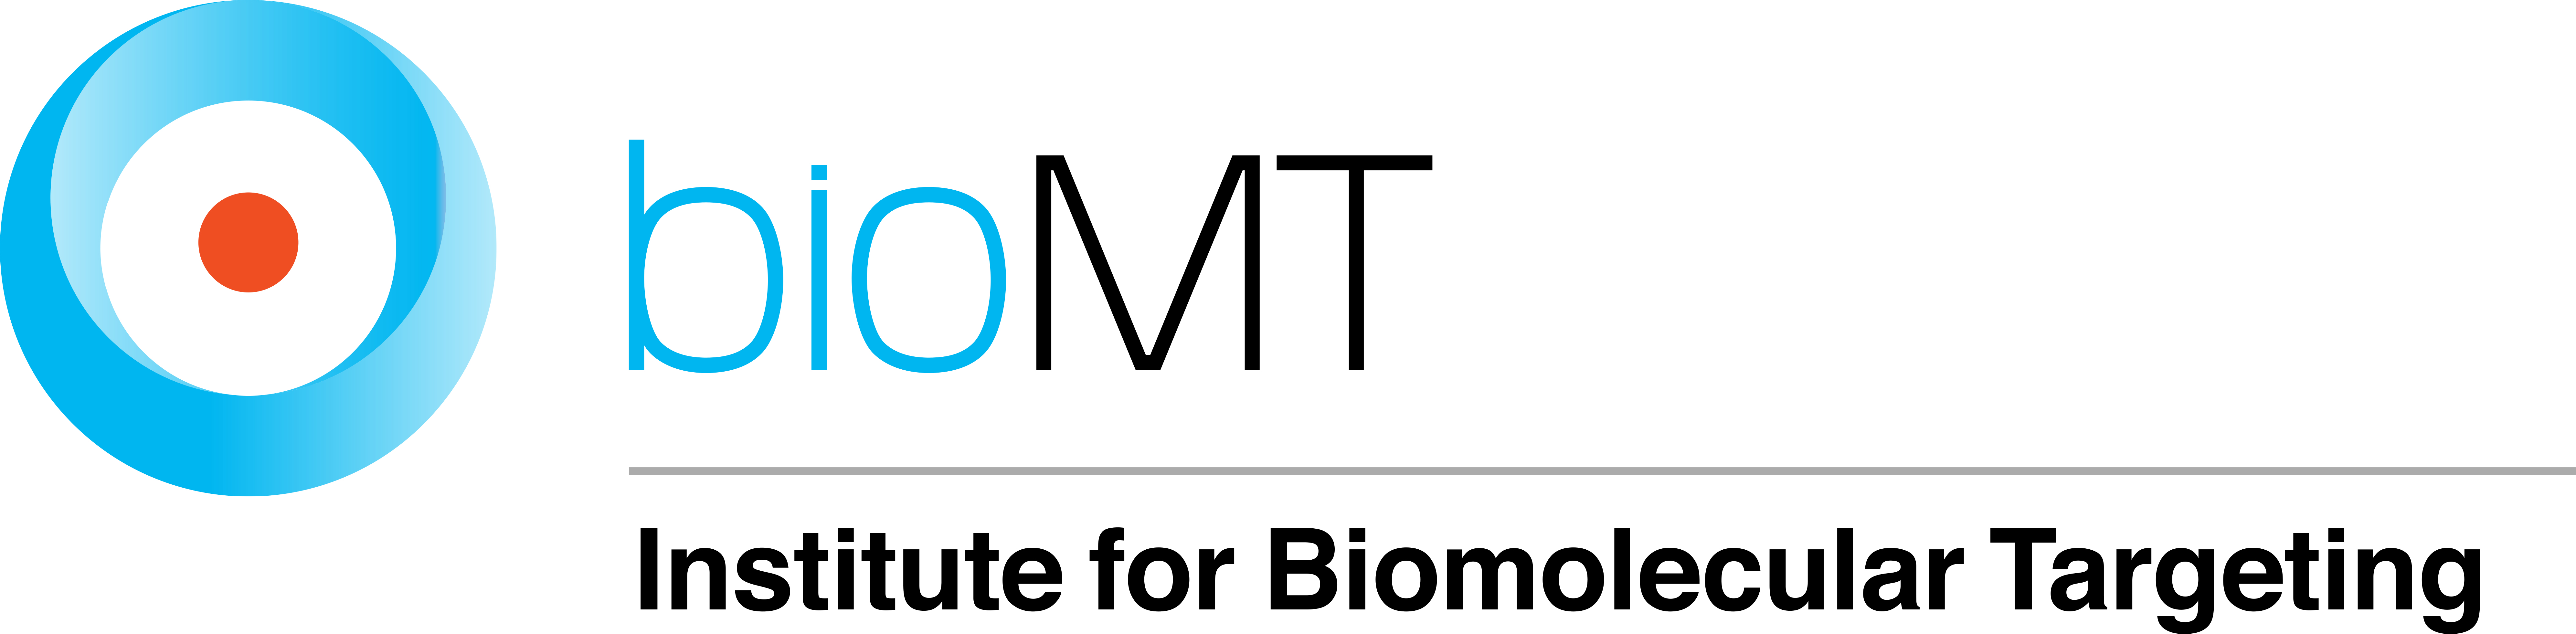 BioMT